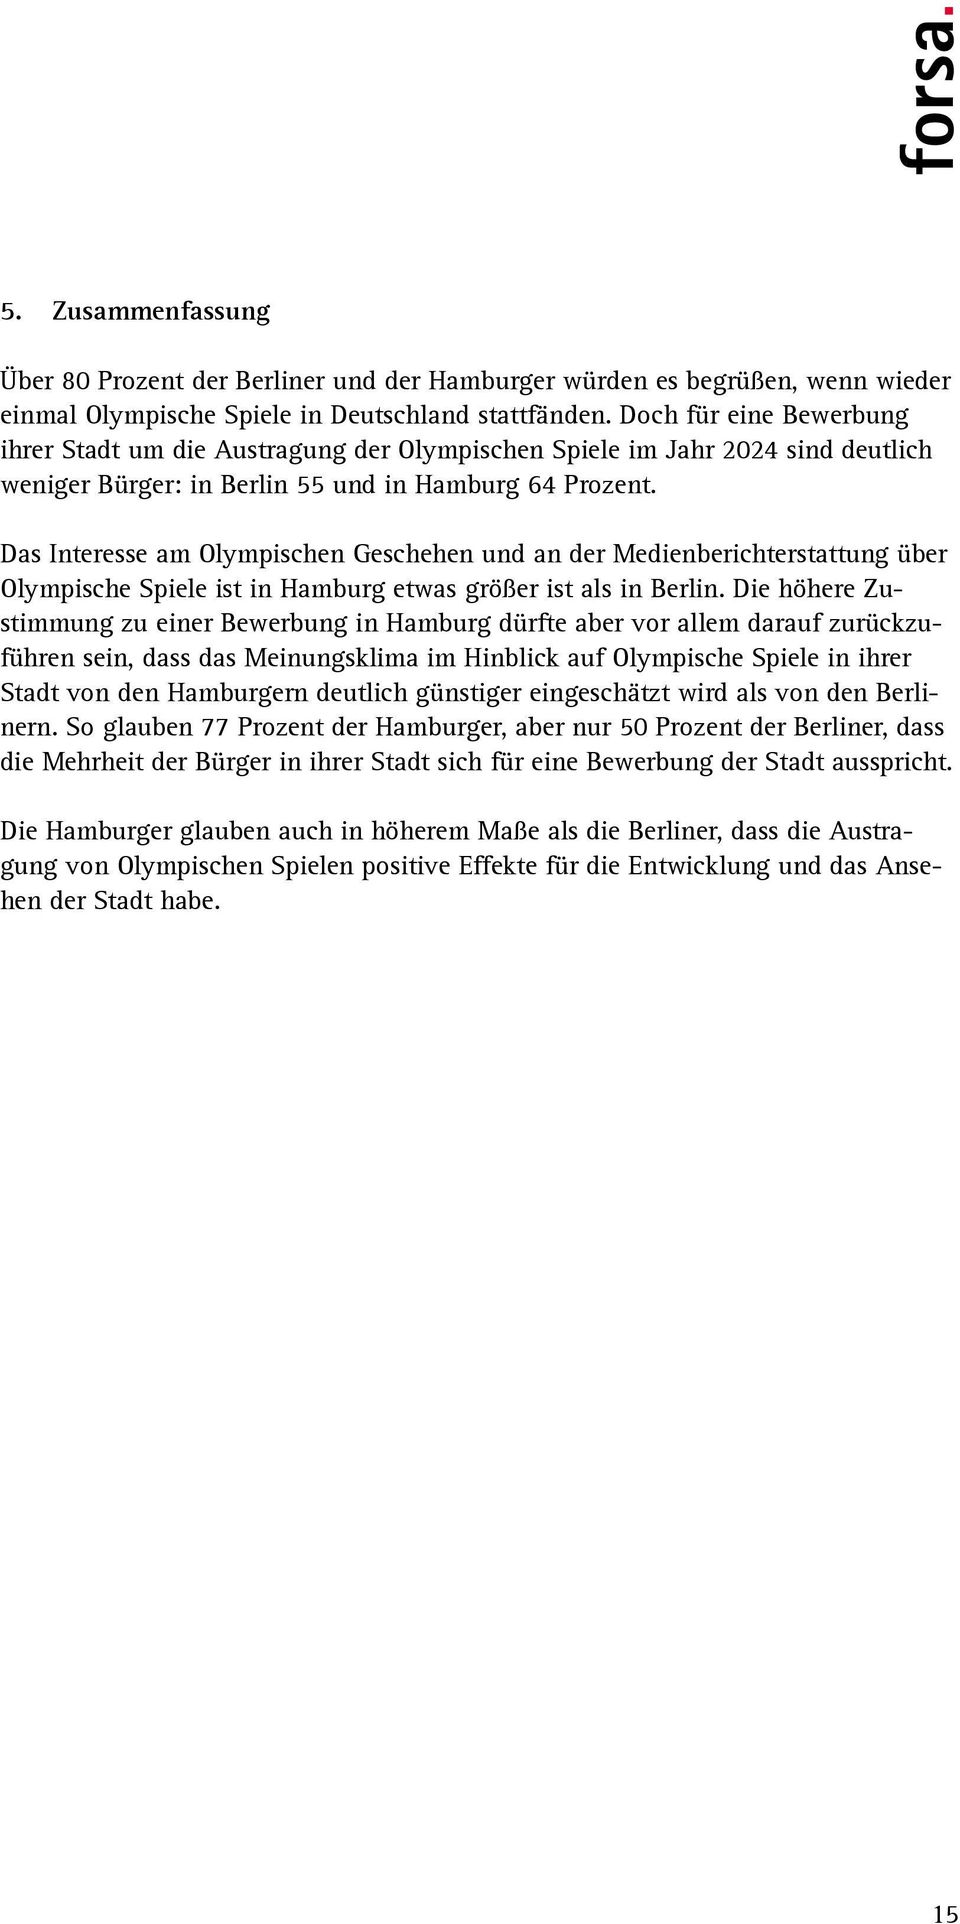 Das Interesse am Olympischen Geschehen und an der Medienberichterstattung über Olympische Spiele ist in Hamburg etwas größer ist als in Berlin.